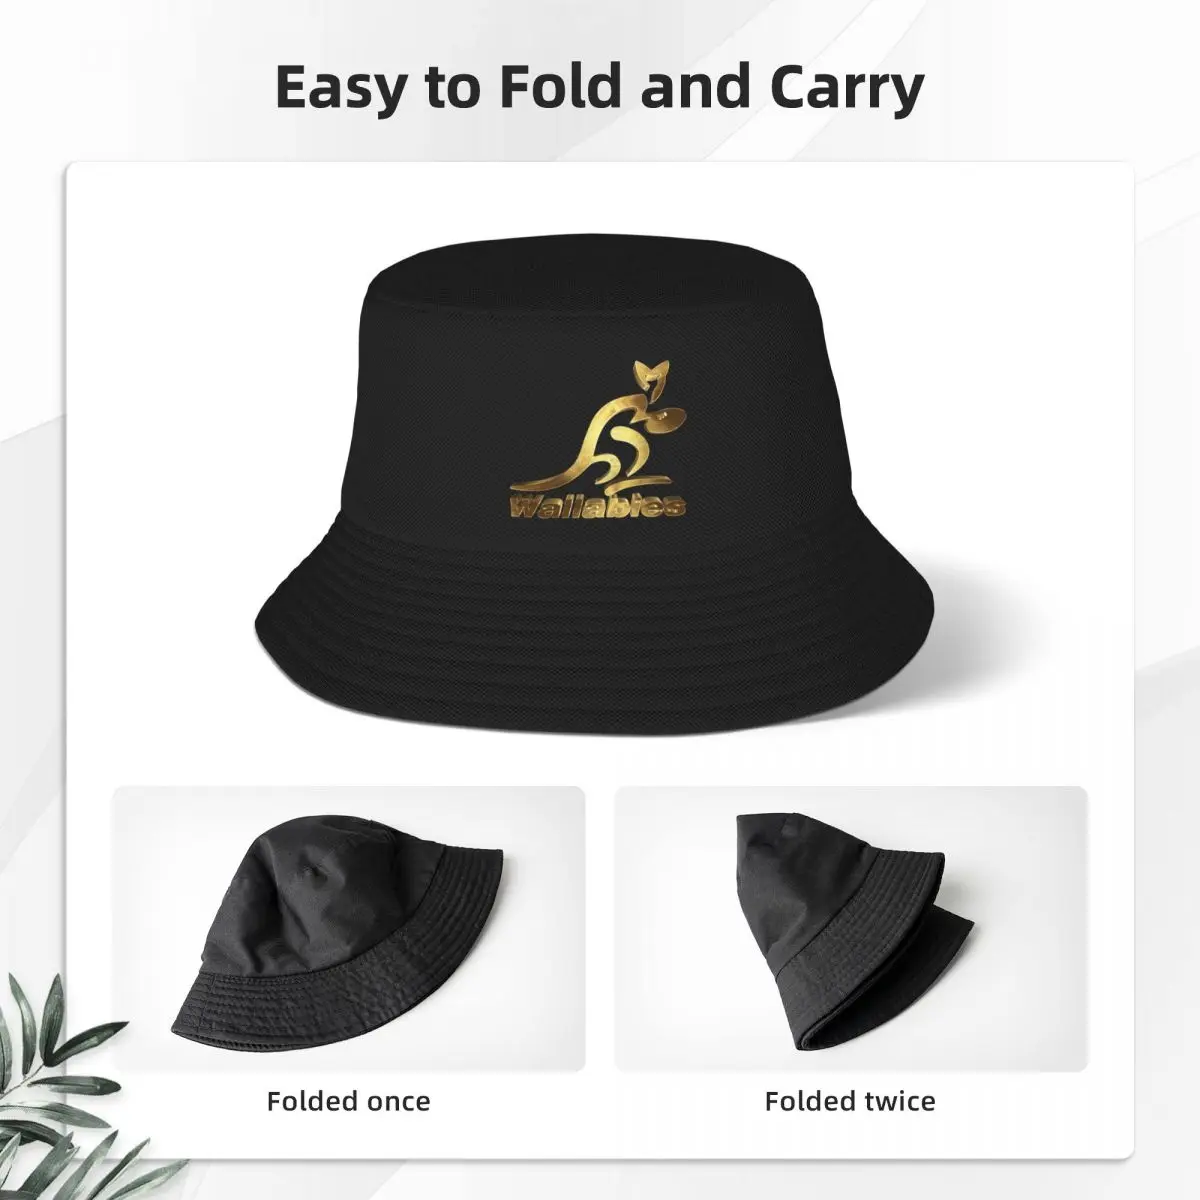 Новая австралийская золотая панама для регби Wallabies, рождественские шляпы, пляжные шляпы для вечеринок из пенопласта, мужские и женские 2